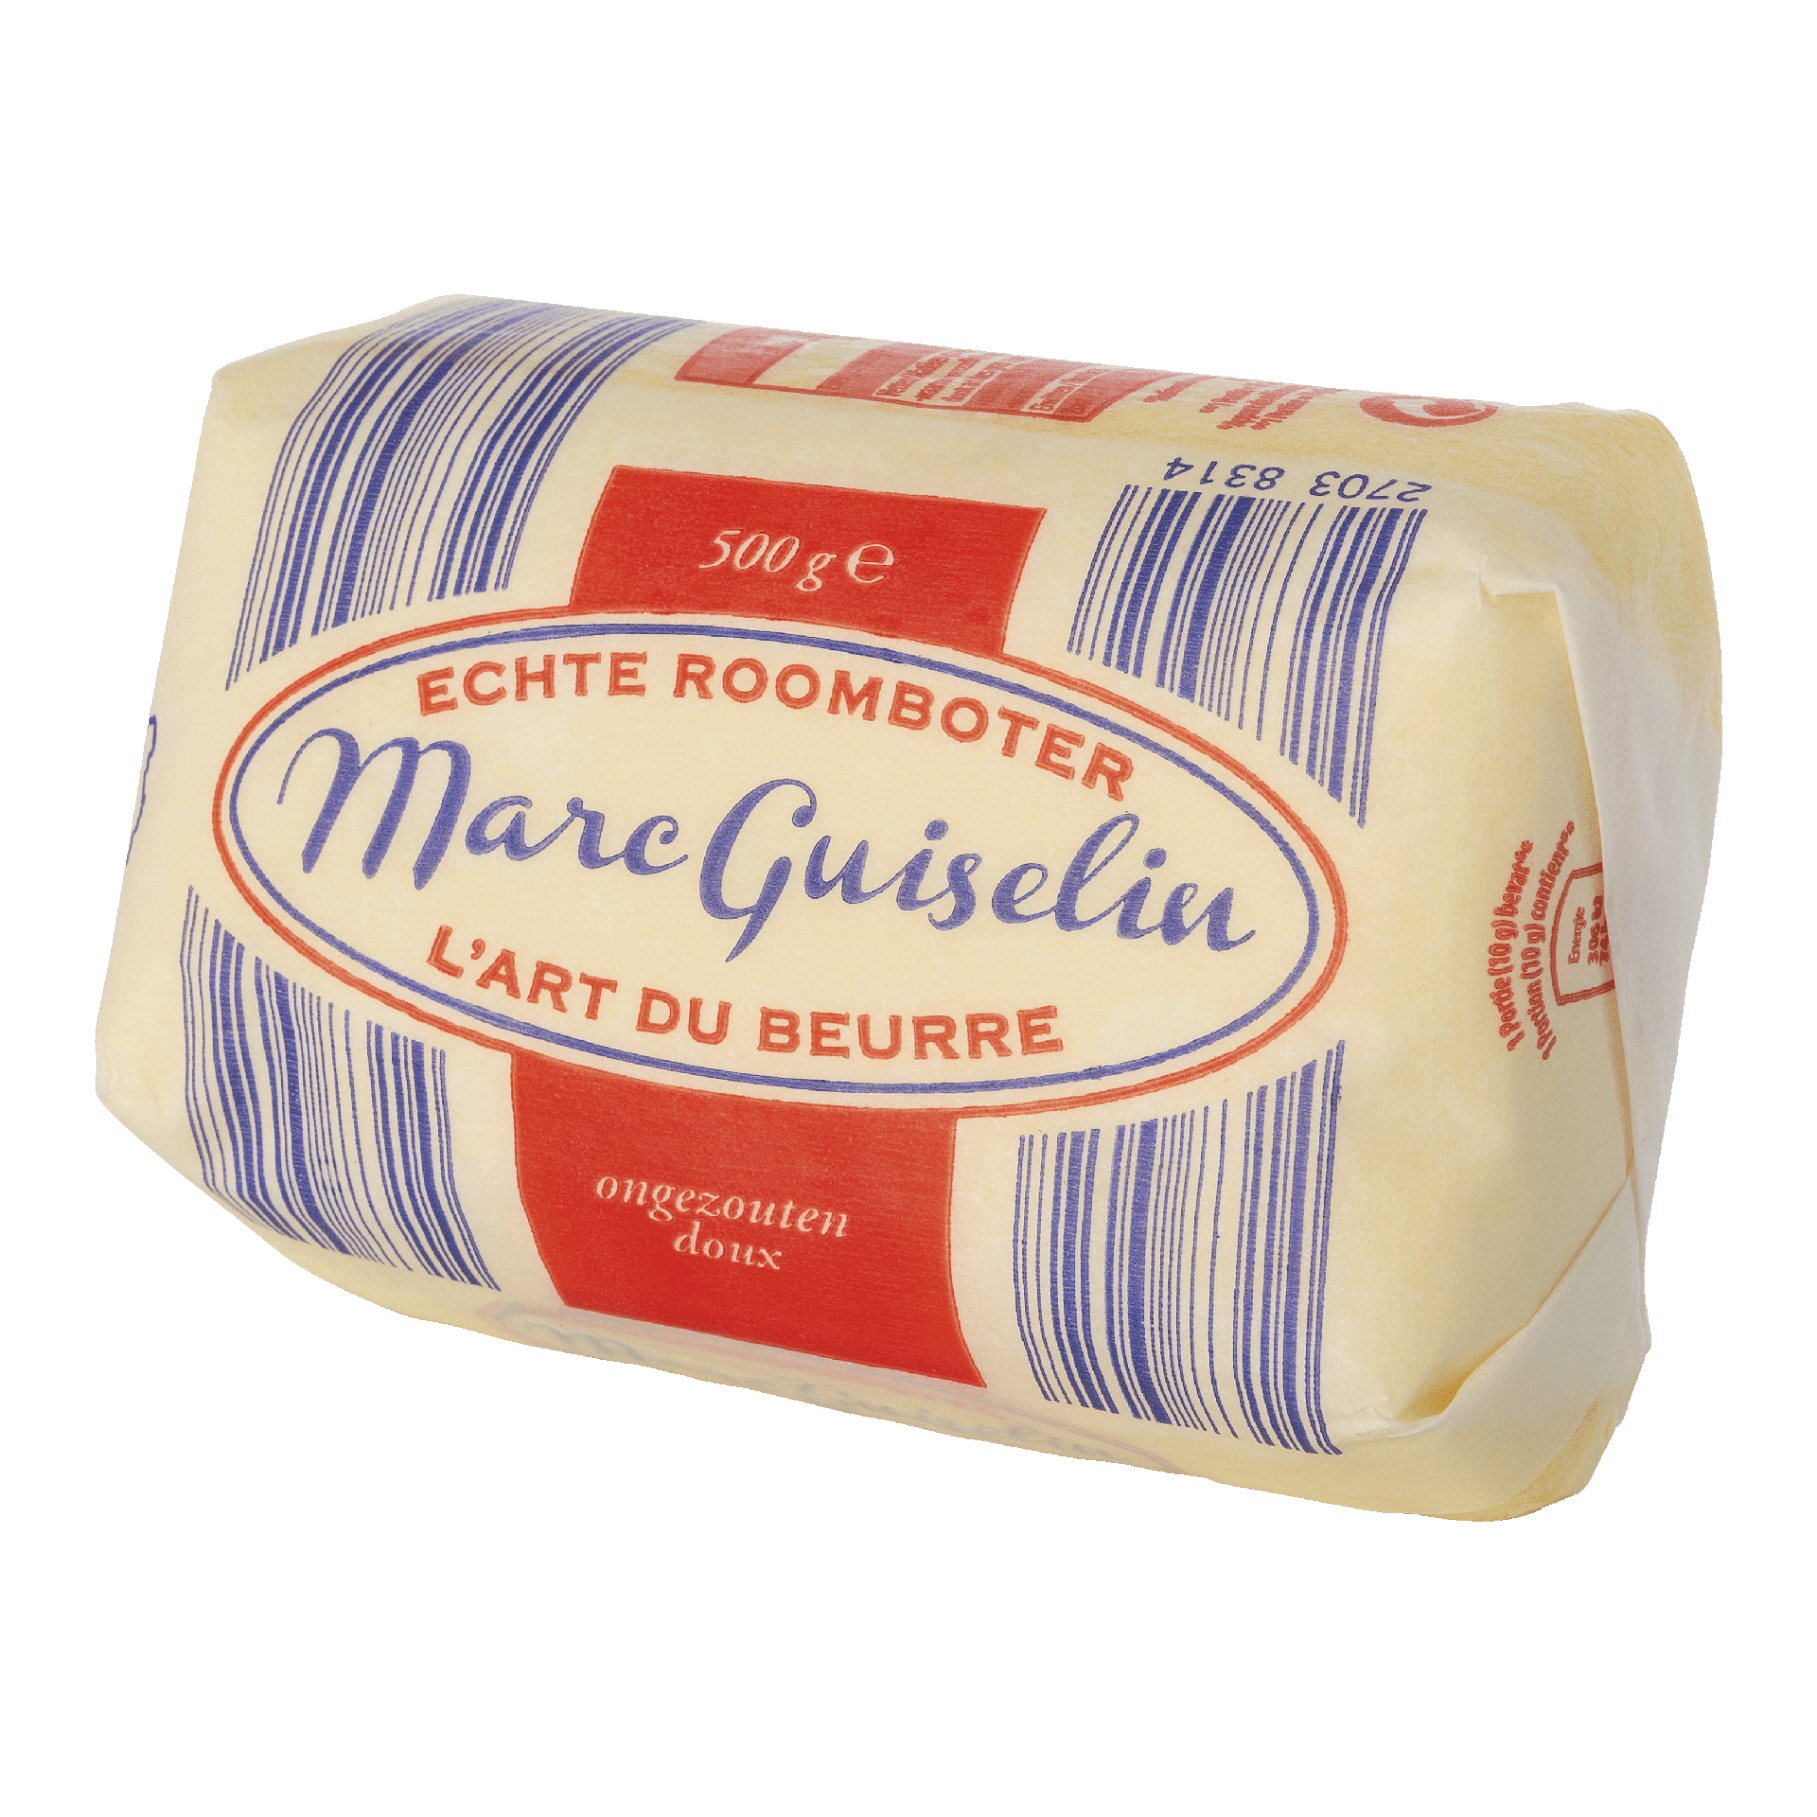 MARC GUISELIN® Handwerklich hergestellte milde Butter günstig bei ALDI